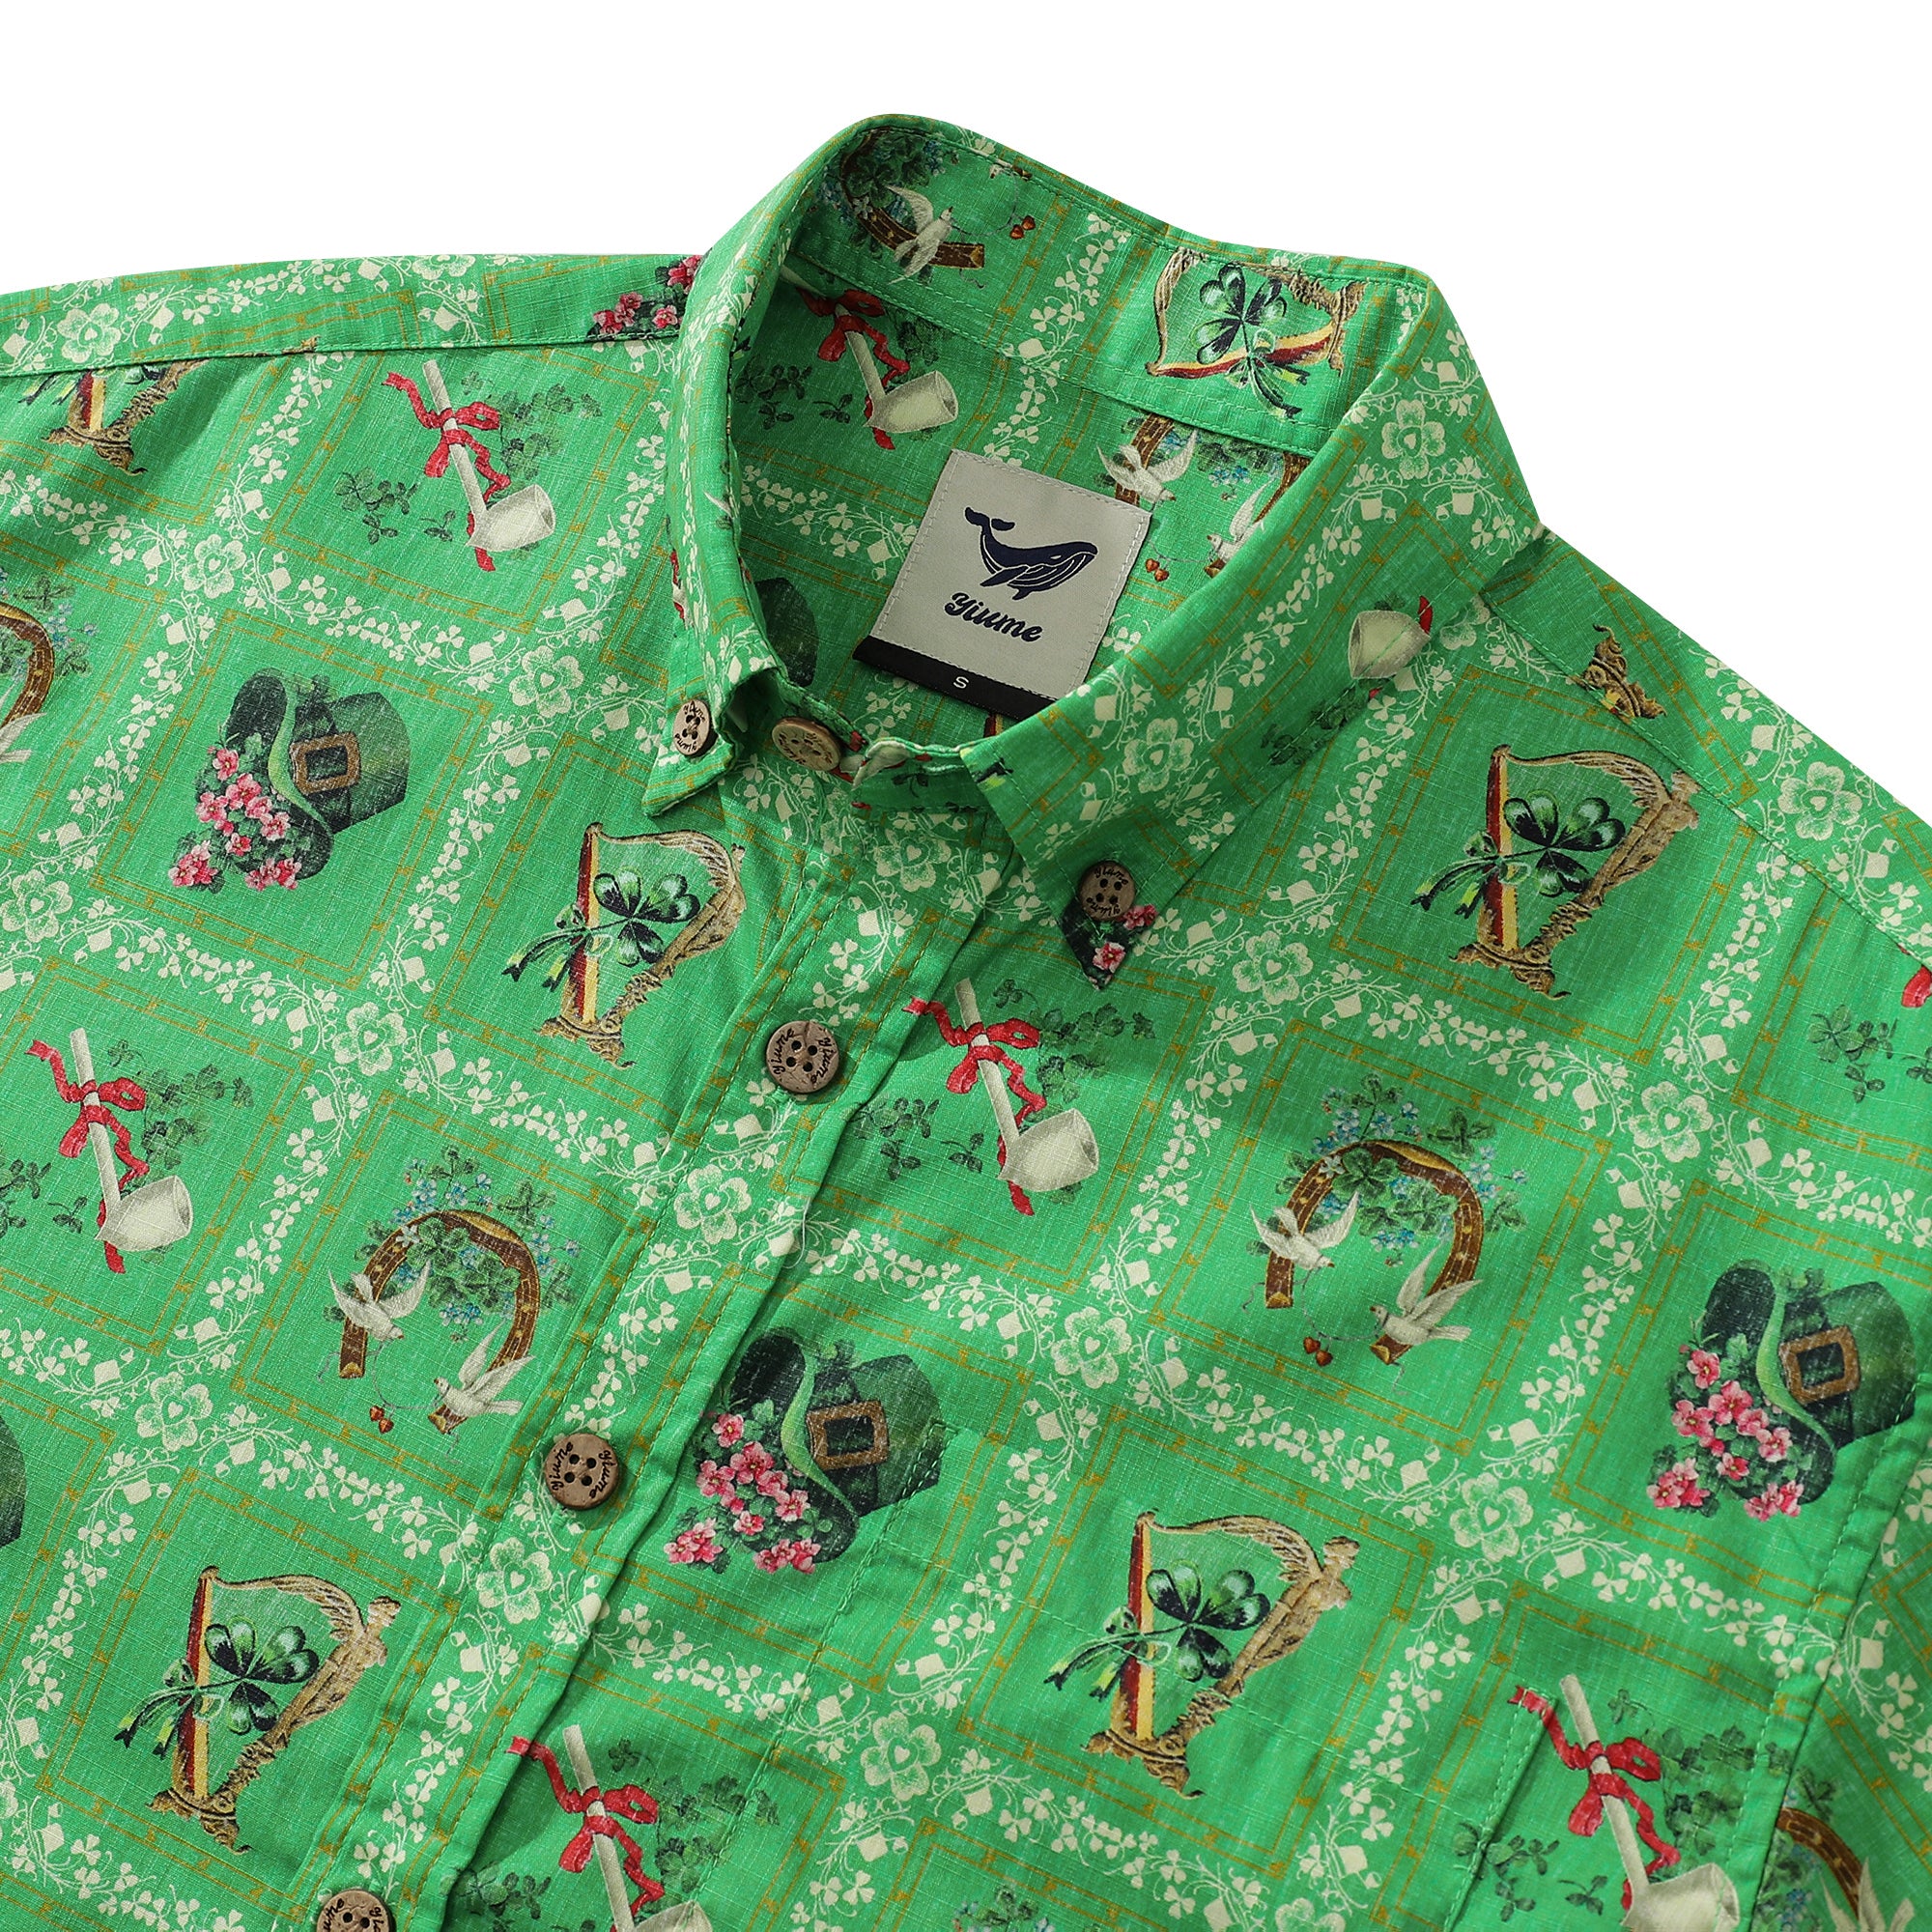 Camisa hawaiana para hombre Camisa de algodón de manga corta verde del día de San Patricio